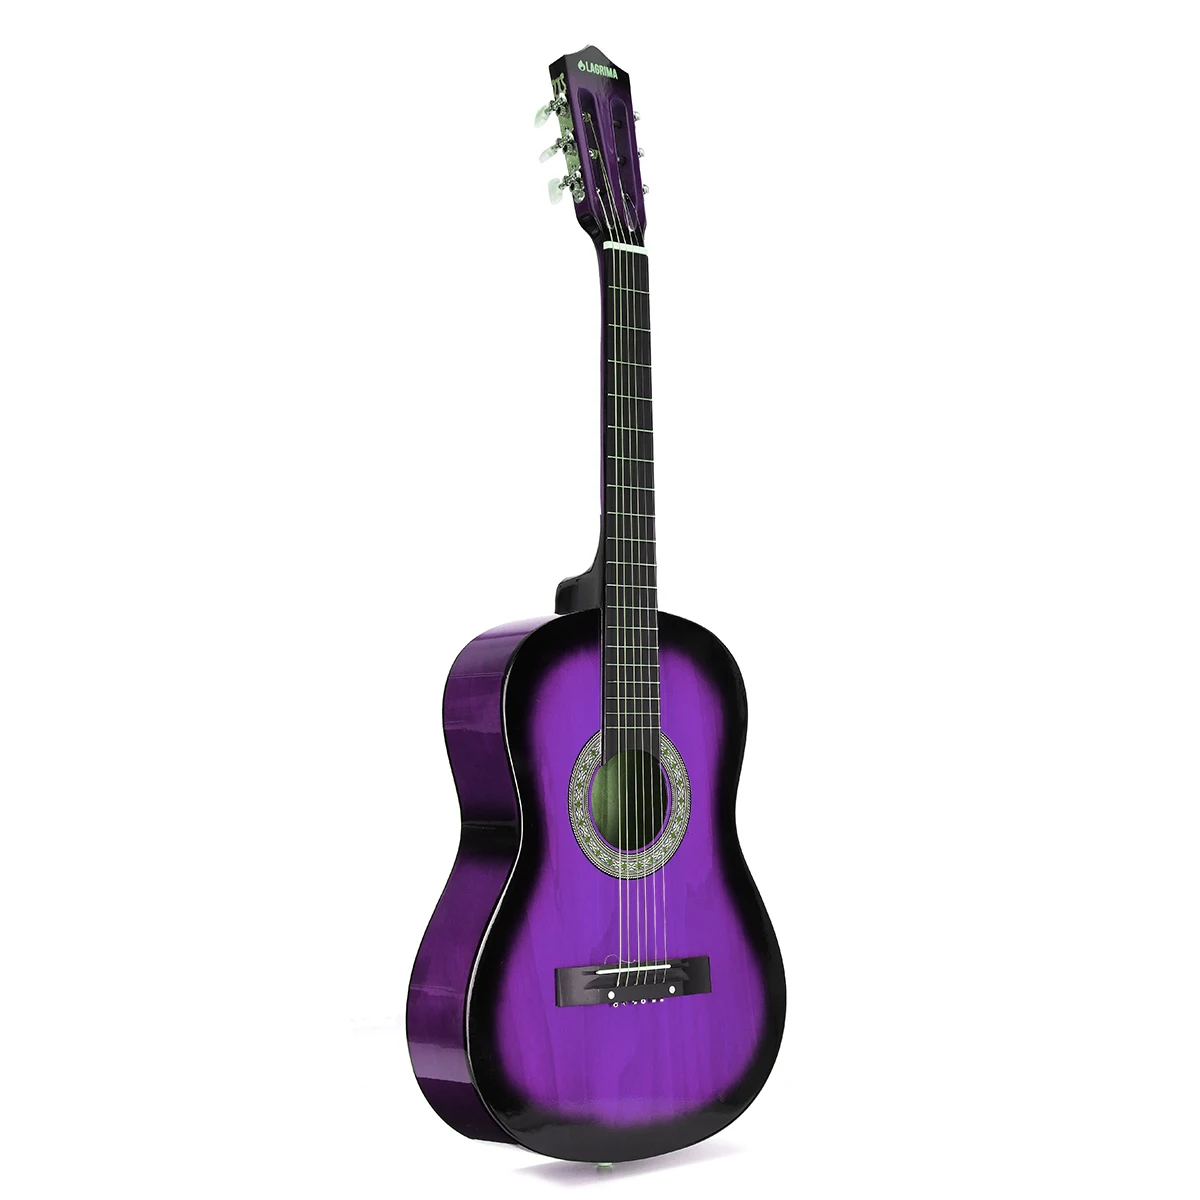 3" Начинающих Акустическая гитара с гитарой чехол, ремешок, тюнер и Палочки Сталь струн гитара Музыкальные инструменты - Цвет: Purple